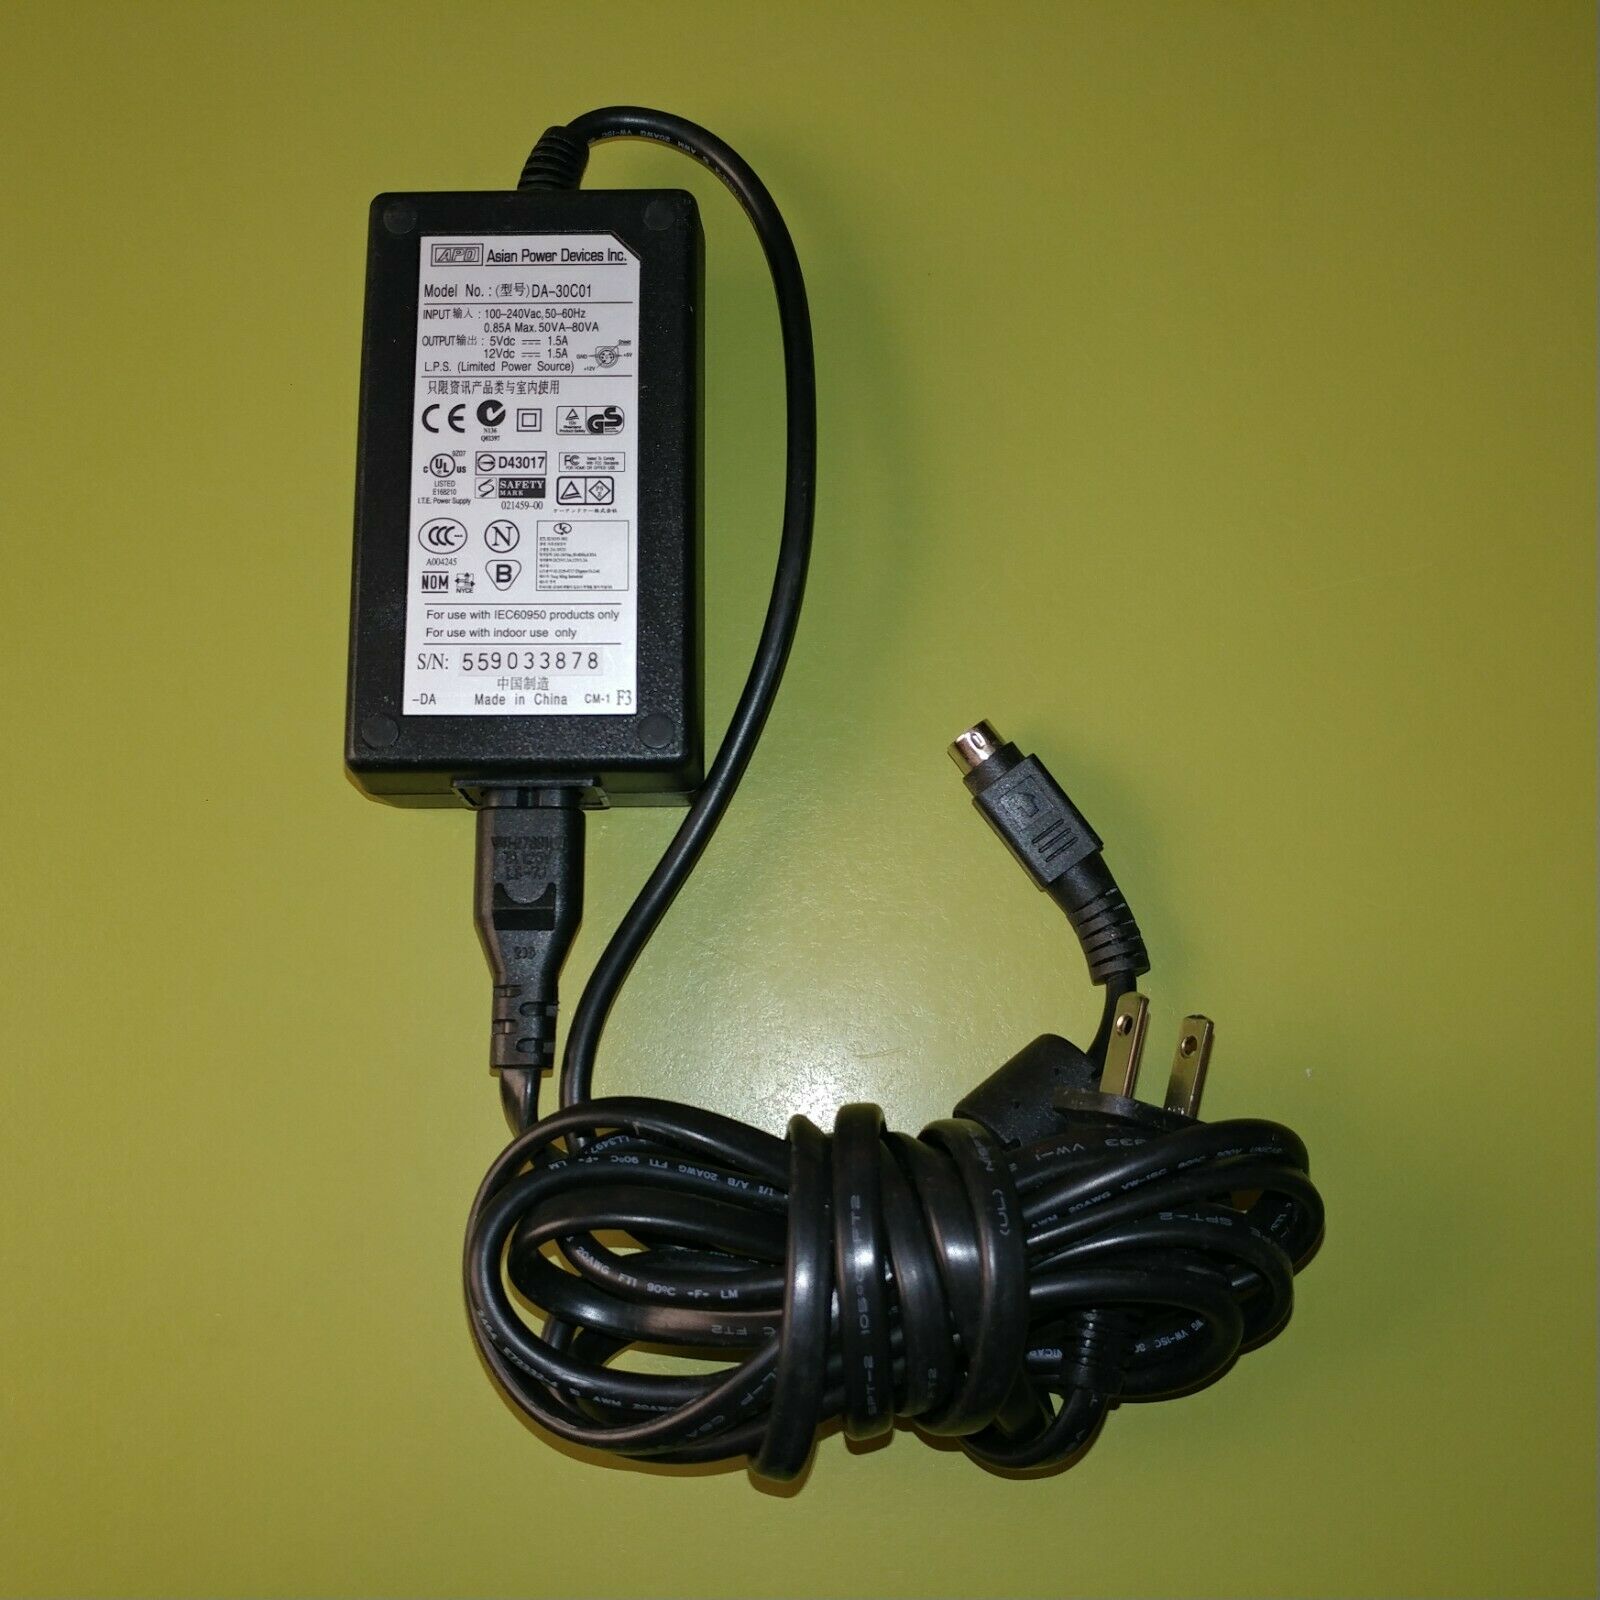 Genuine APD Iomega AC Adapter Power Supply Model # DA-30C01 12Vdc 1.5A Modular: No Type: AC/DC Adapter Model: DA-30C - Click Image to Close